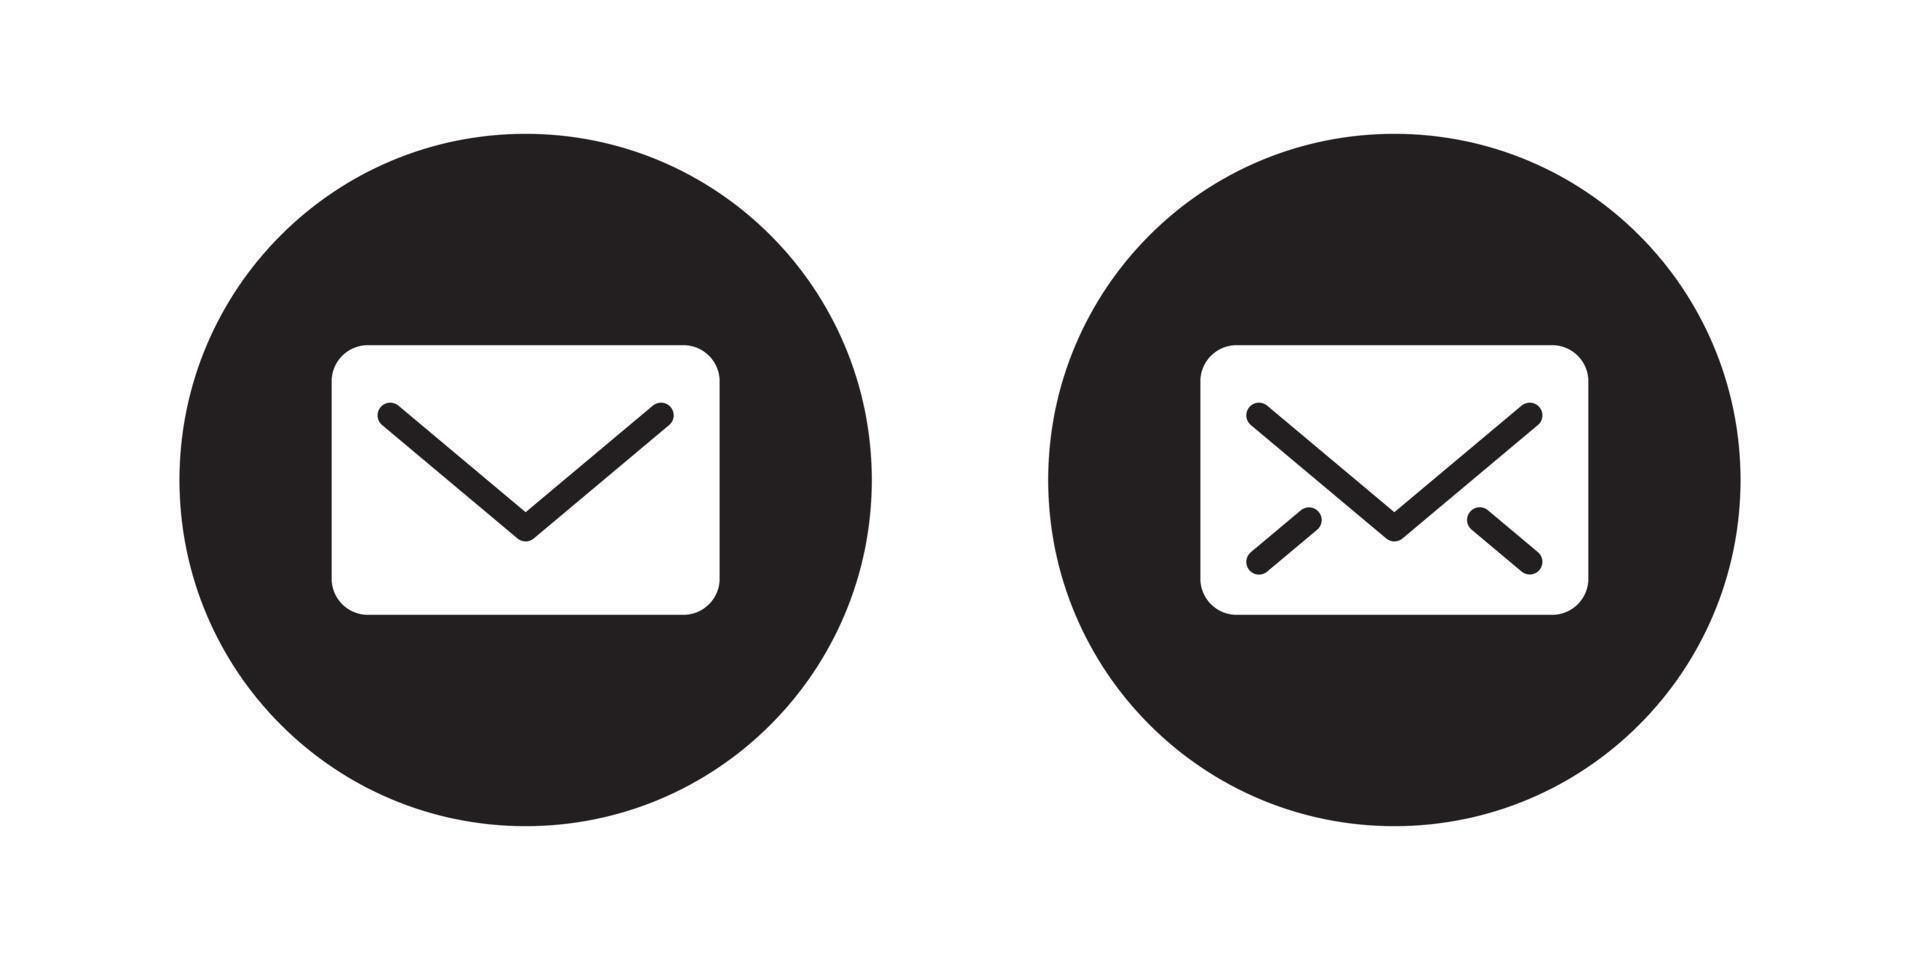 mensajes, vector de icono de sobre en estilo clipart. símbolo de signo de mensaje